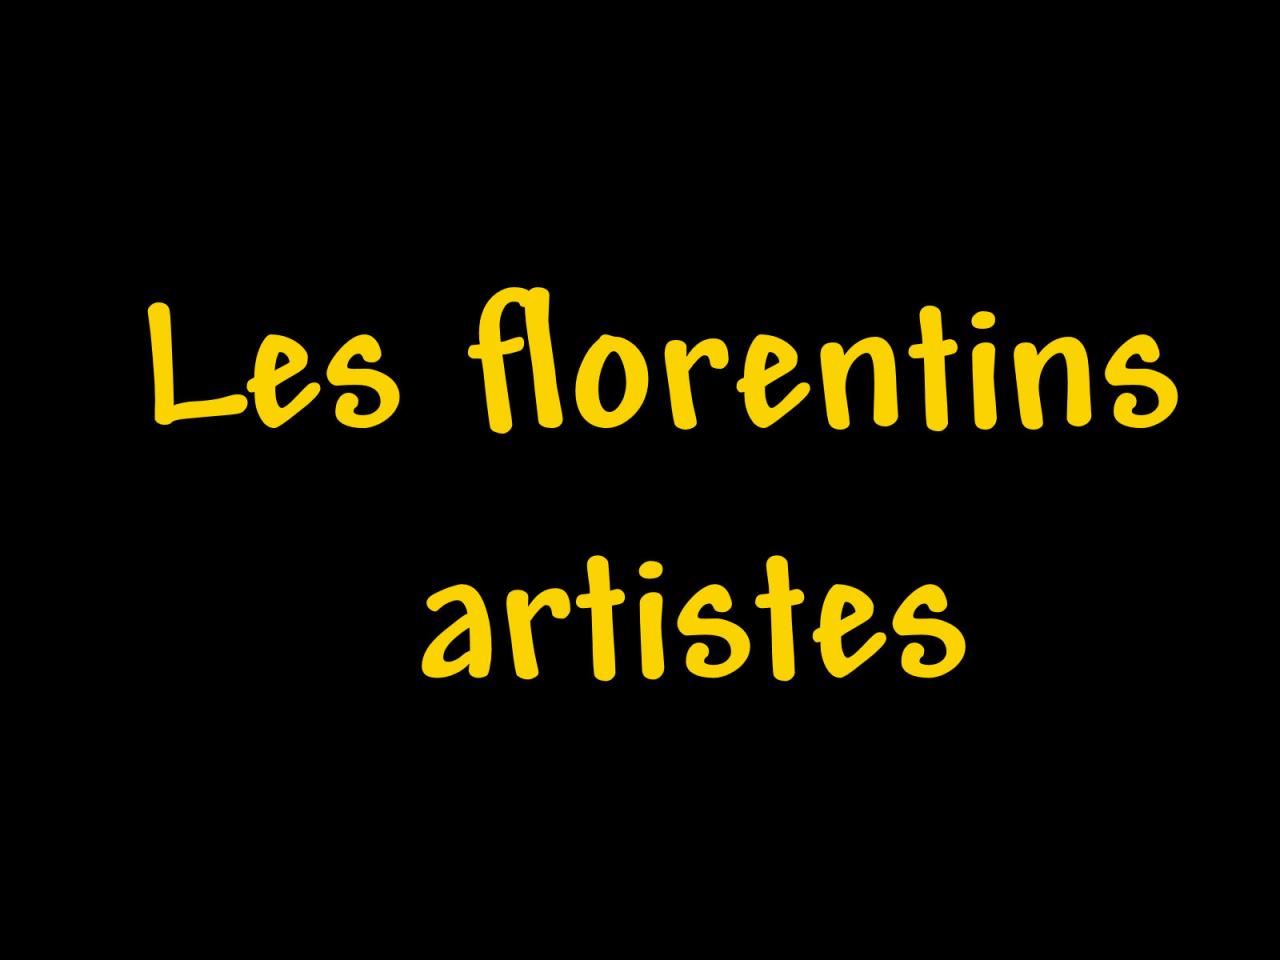 Les florentins artistes